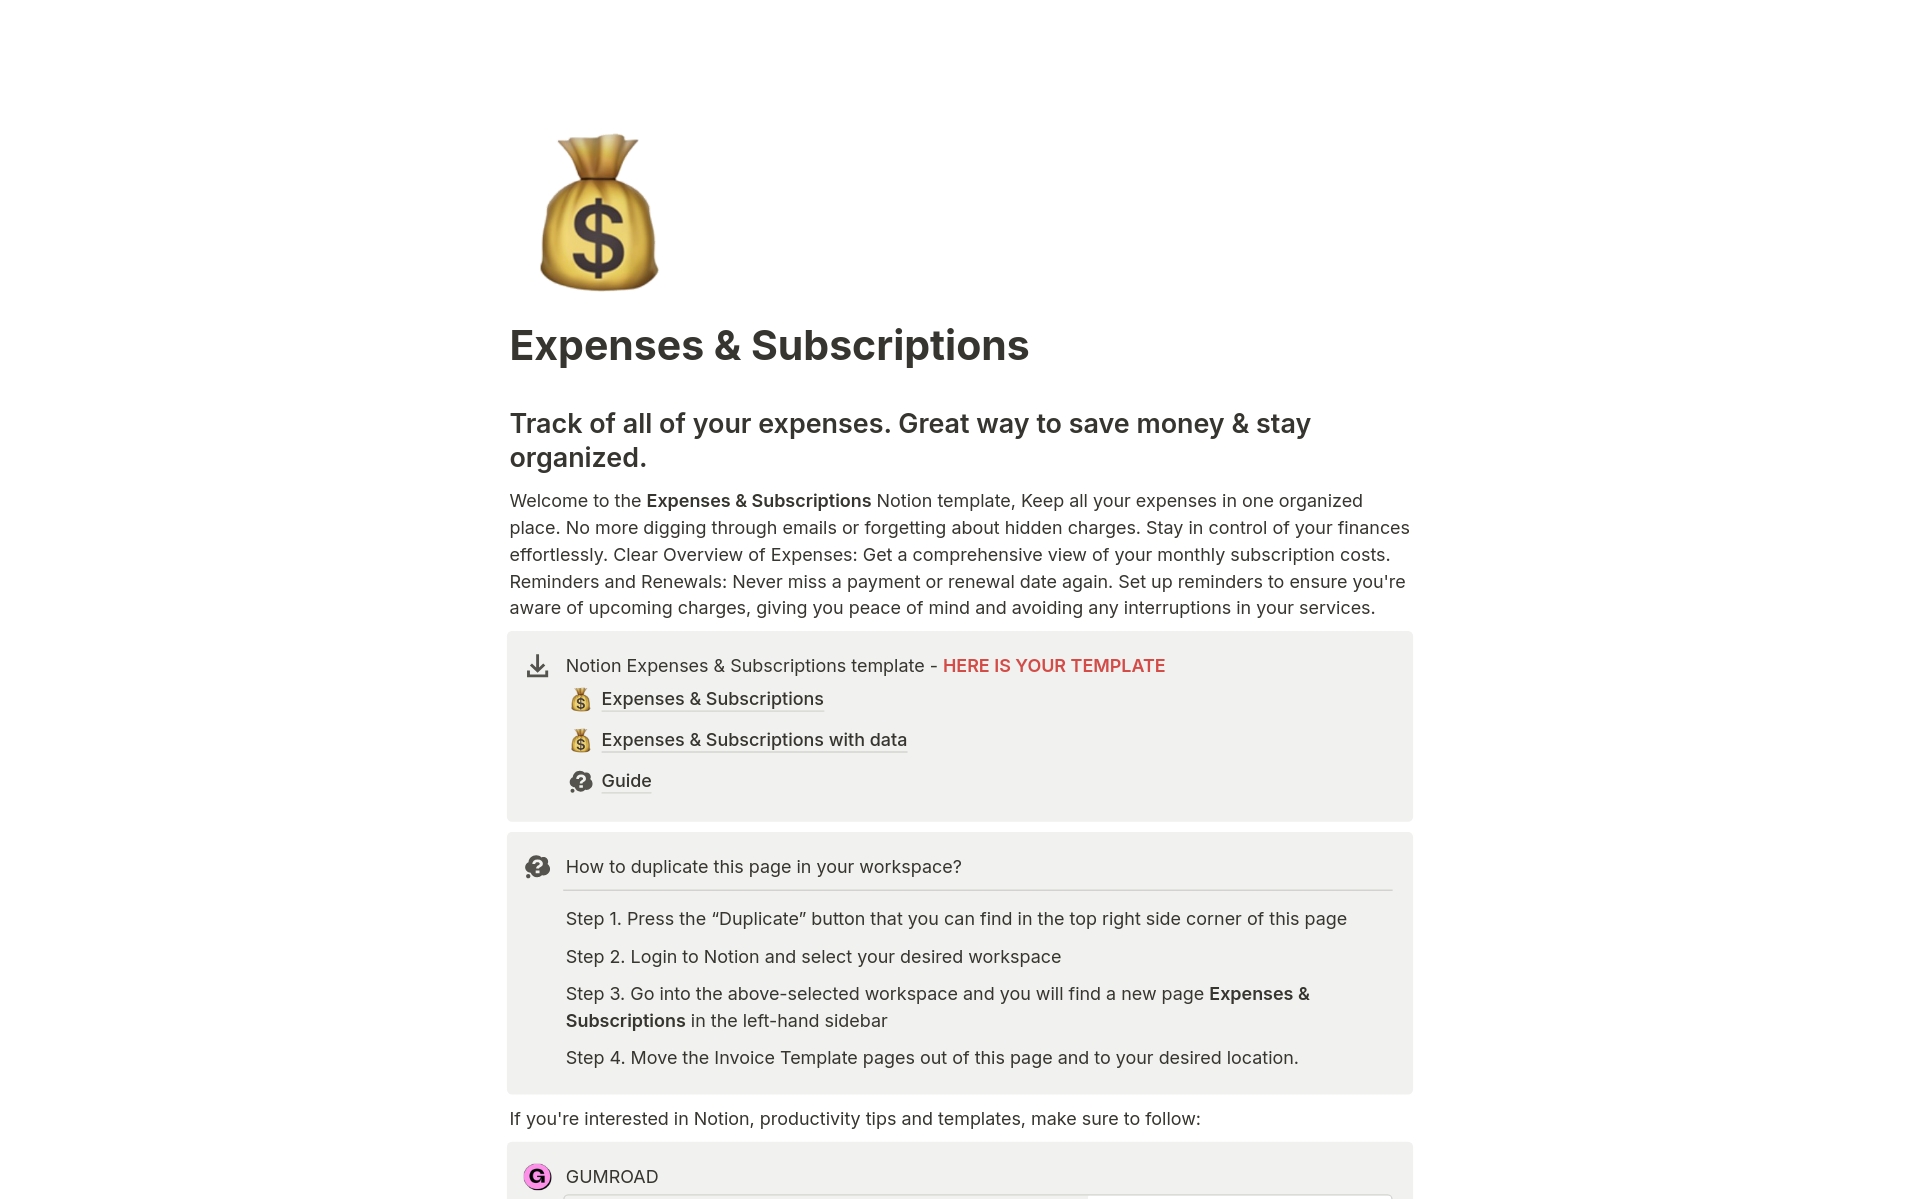 Uma prévia do modelo para Expenses & Subscriptions